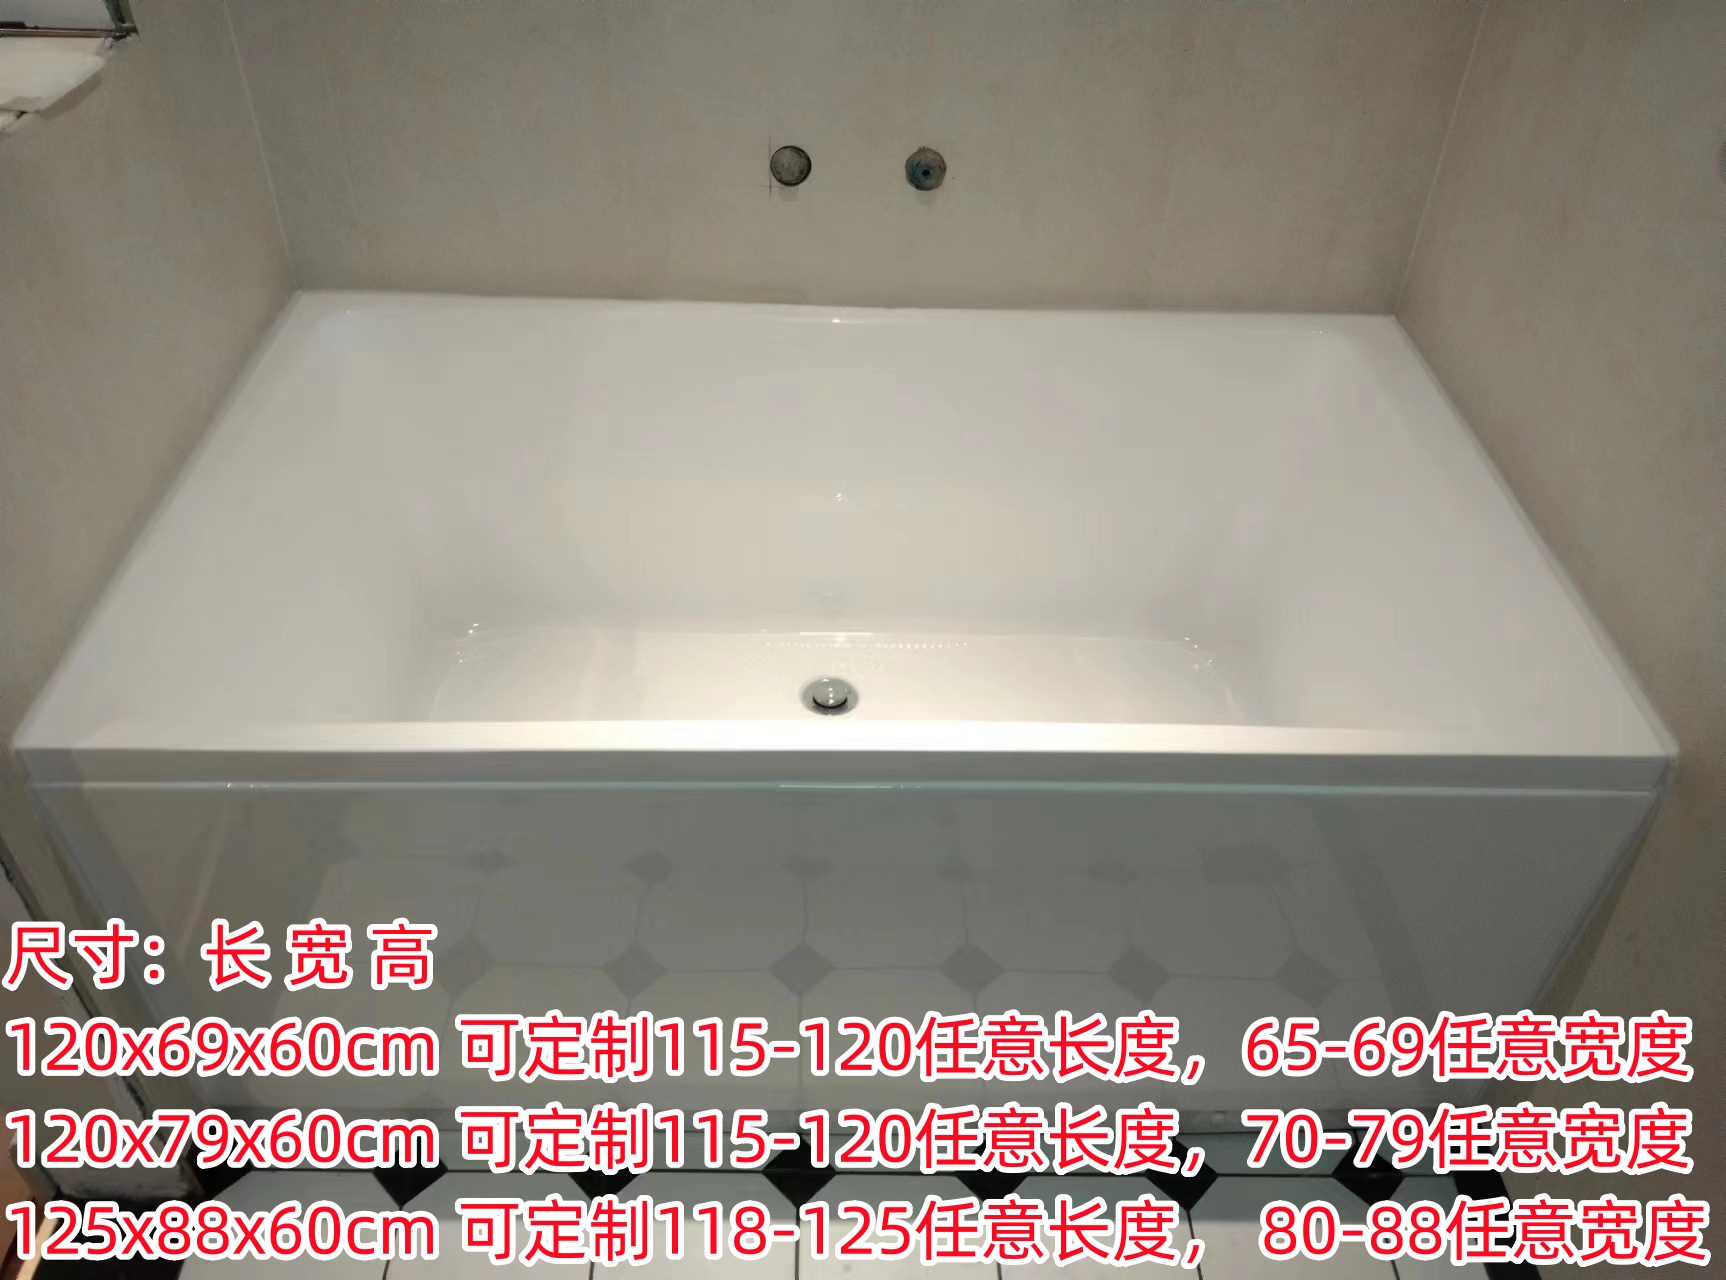 加宽 小户型 宽60-90长109-180 亚克力浴盆简约家用 超宽双人浴缸